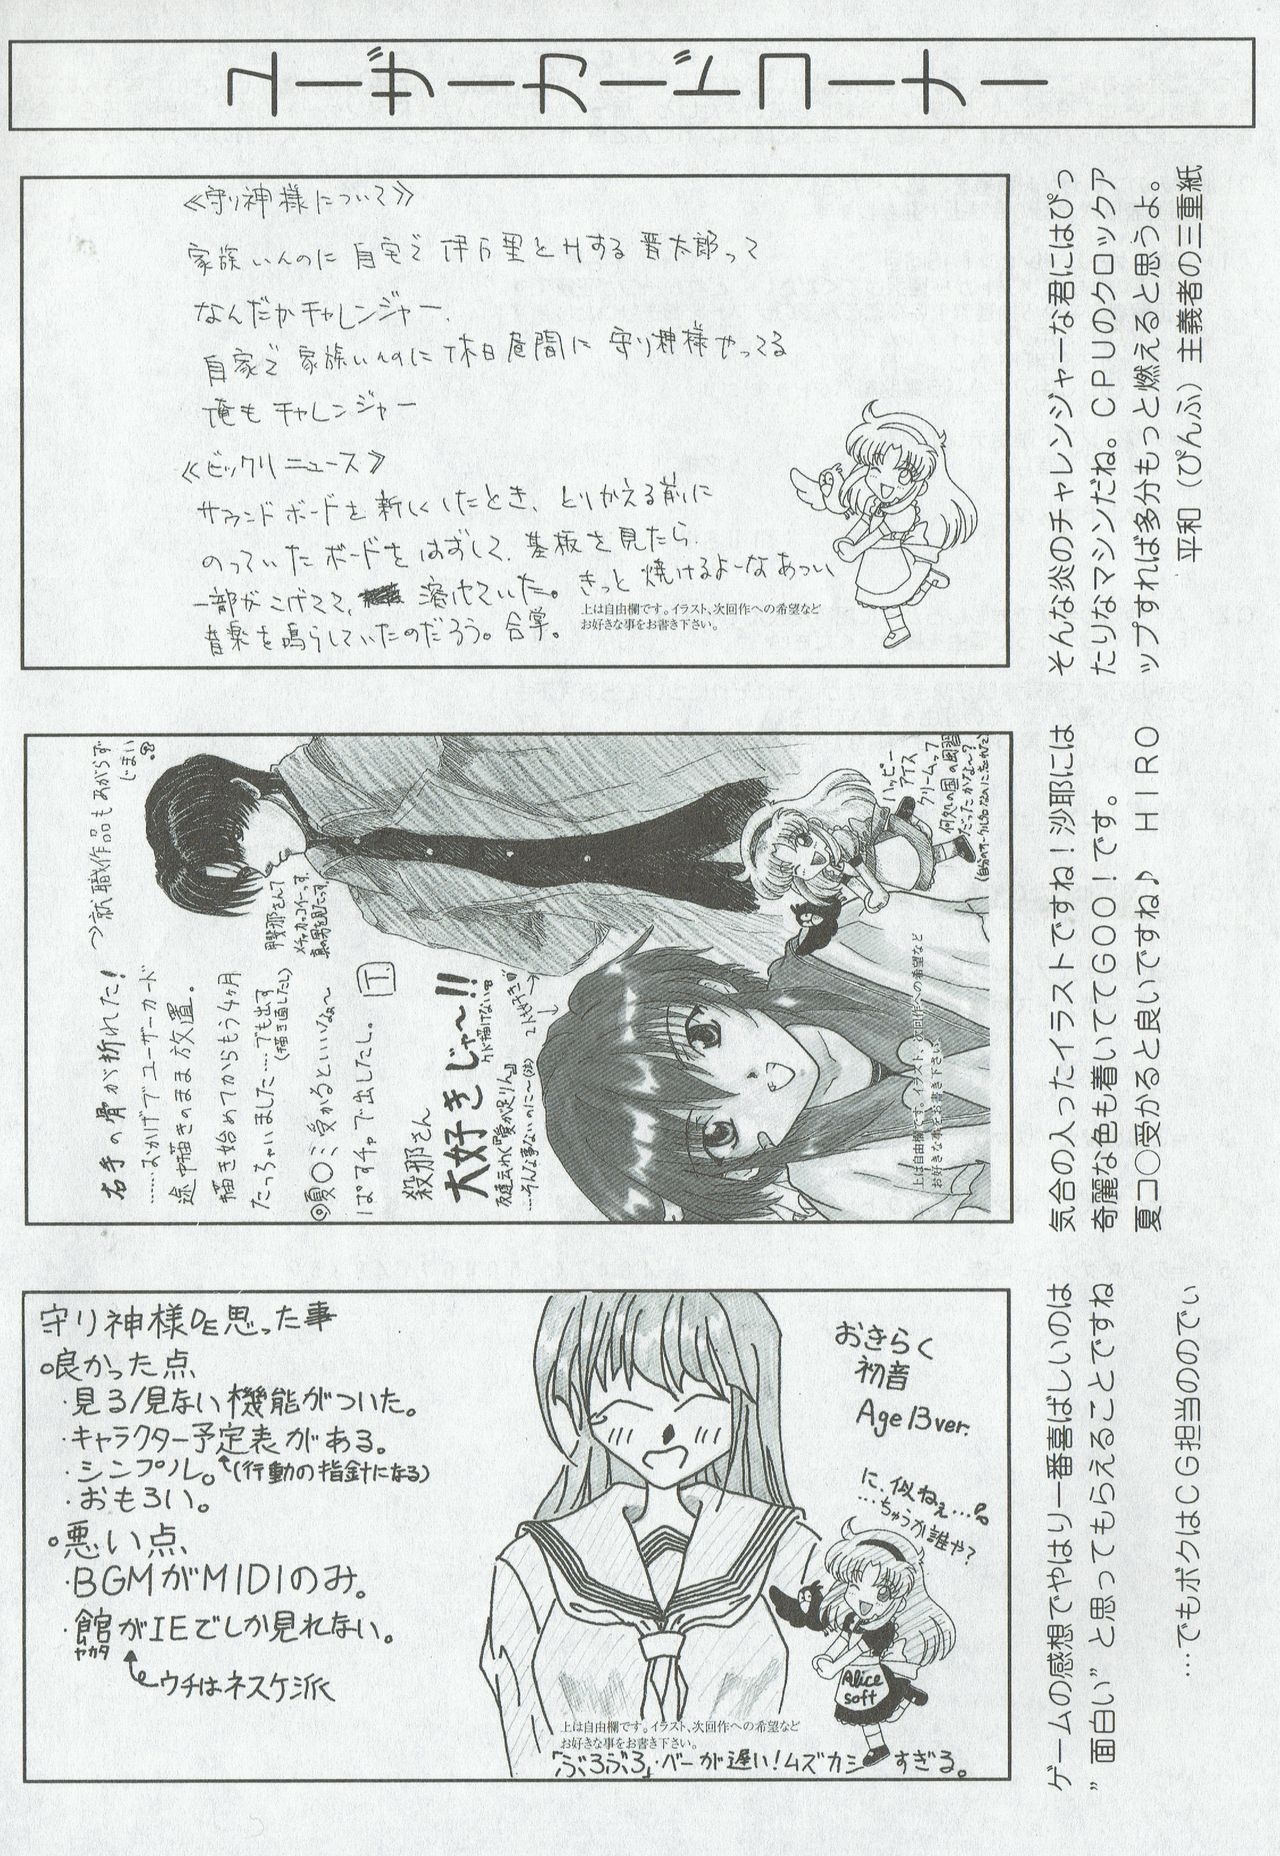 Arisu no Denchi Bakudan Vol. 05 26